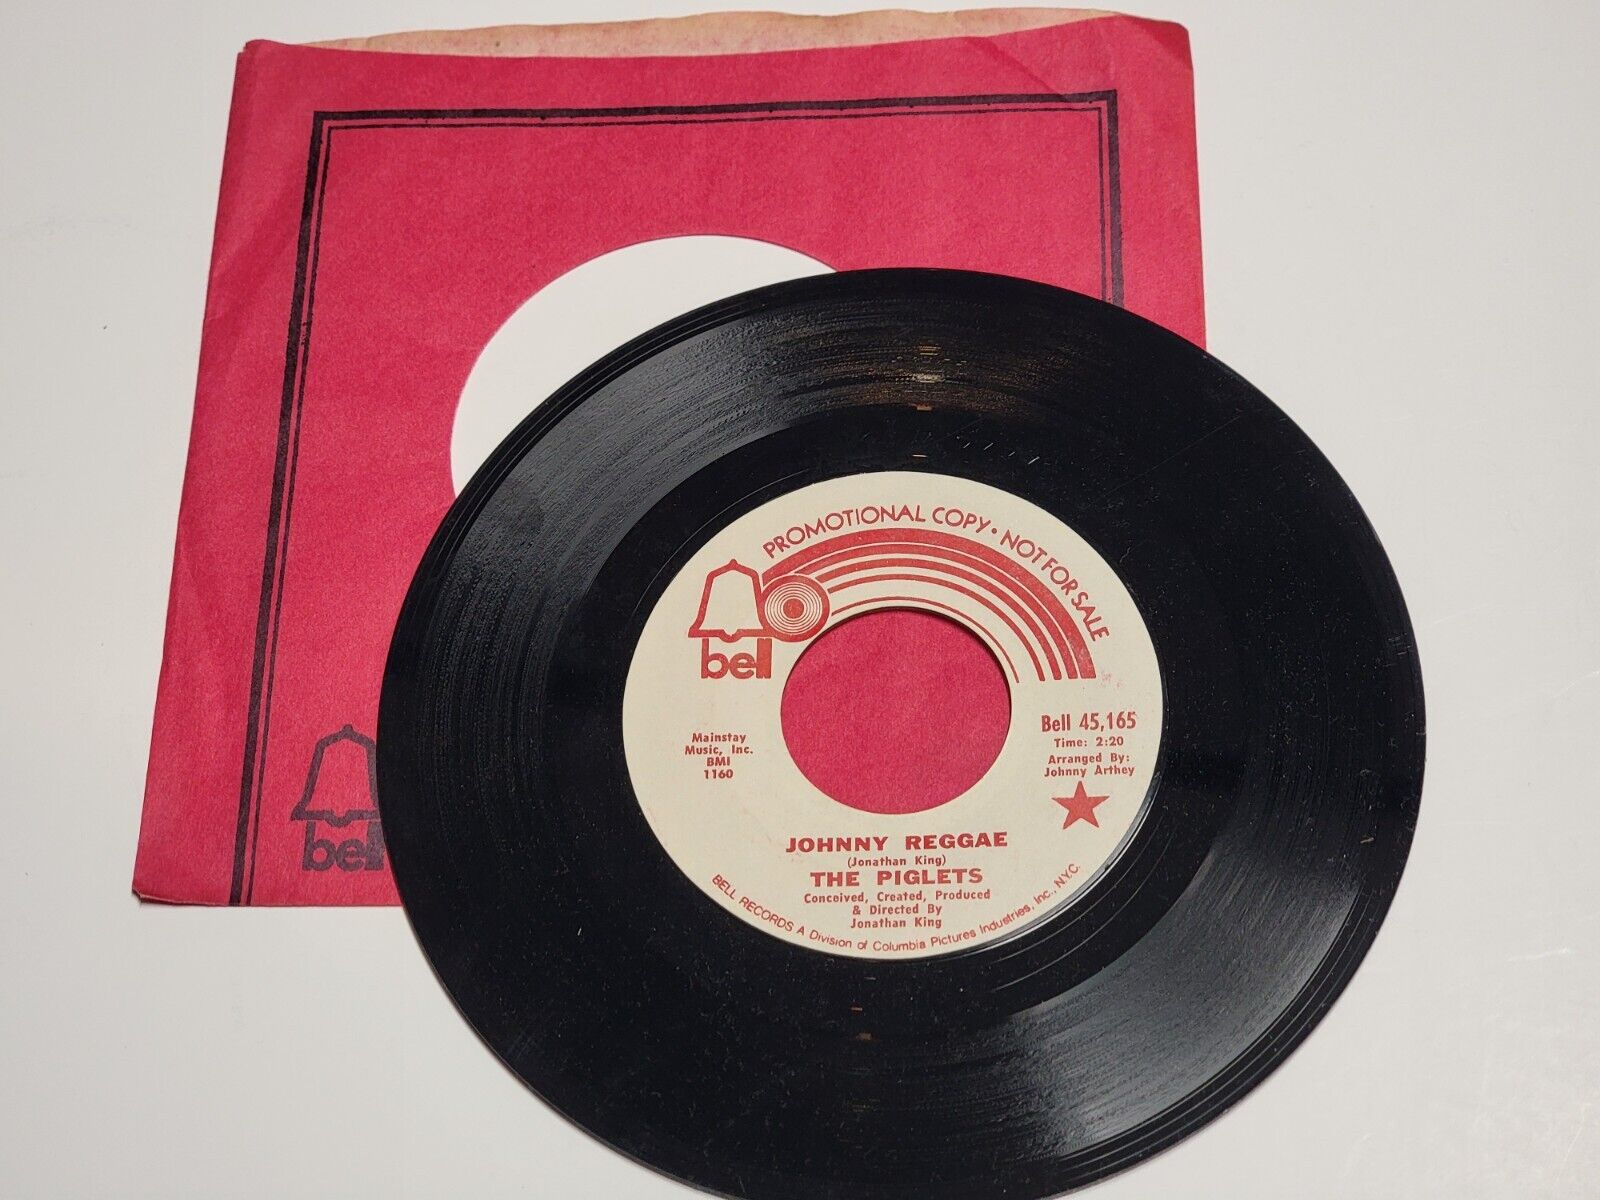 Vtg 1971 45 RPM - The Piglets – Johnny Reggae - Bell PROMO